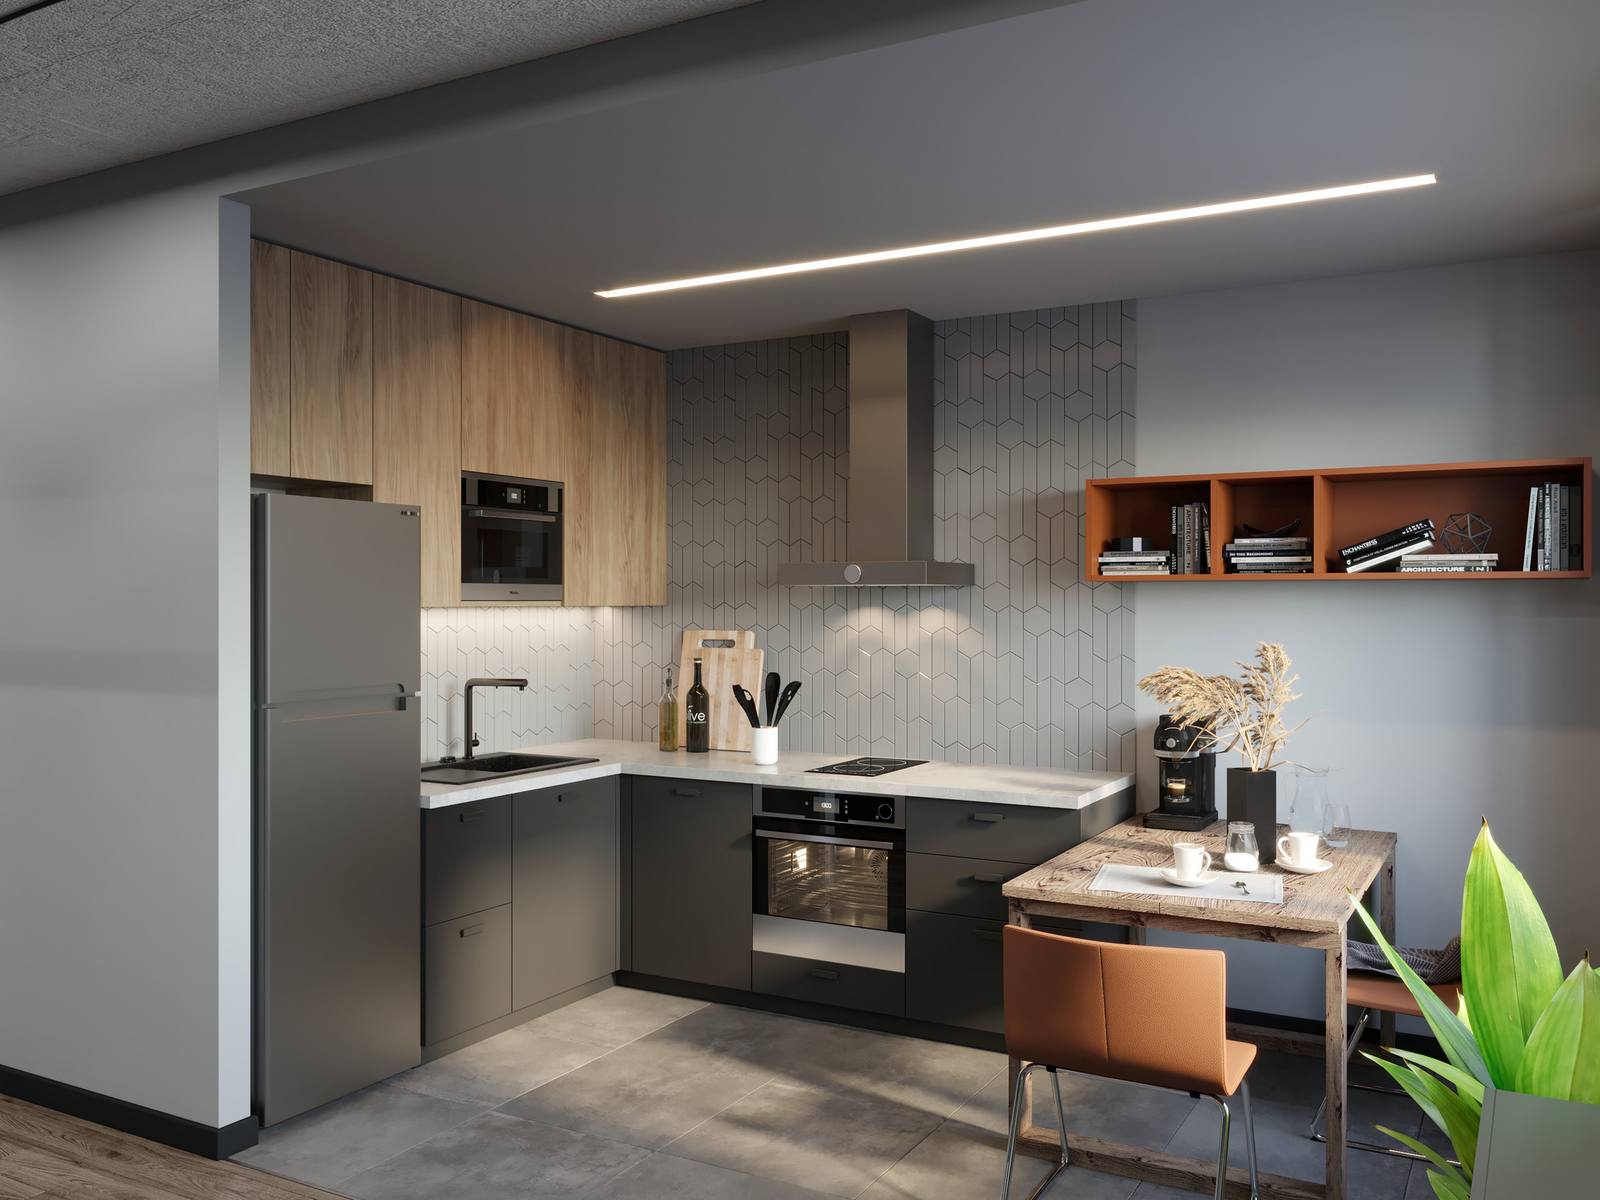 Phòng bếp có thiết kế kiểu chữ L phù hợp với bố cục của căn hộ. Tủ lưu trữ trên ốp gỗ tạo sự tương phản nhẹ nhàng với hệ tủ dưới sơn màu xám đậm.